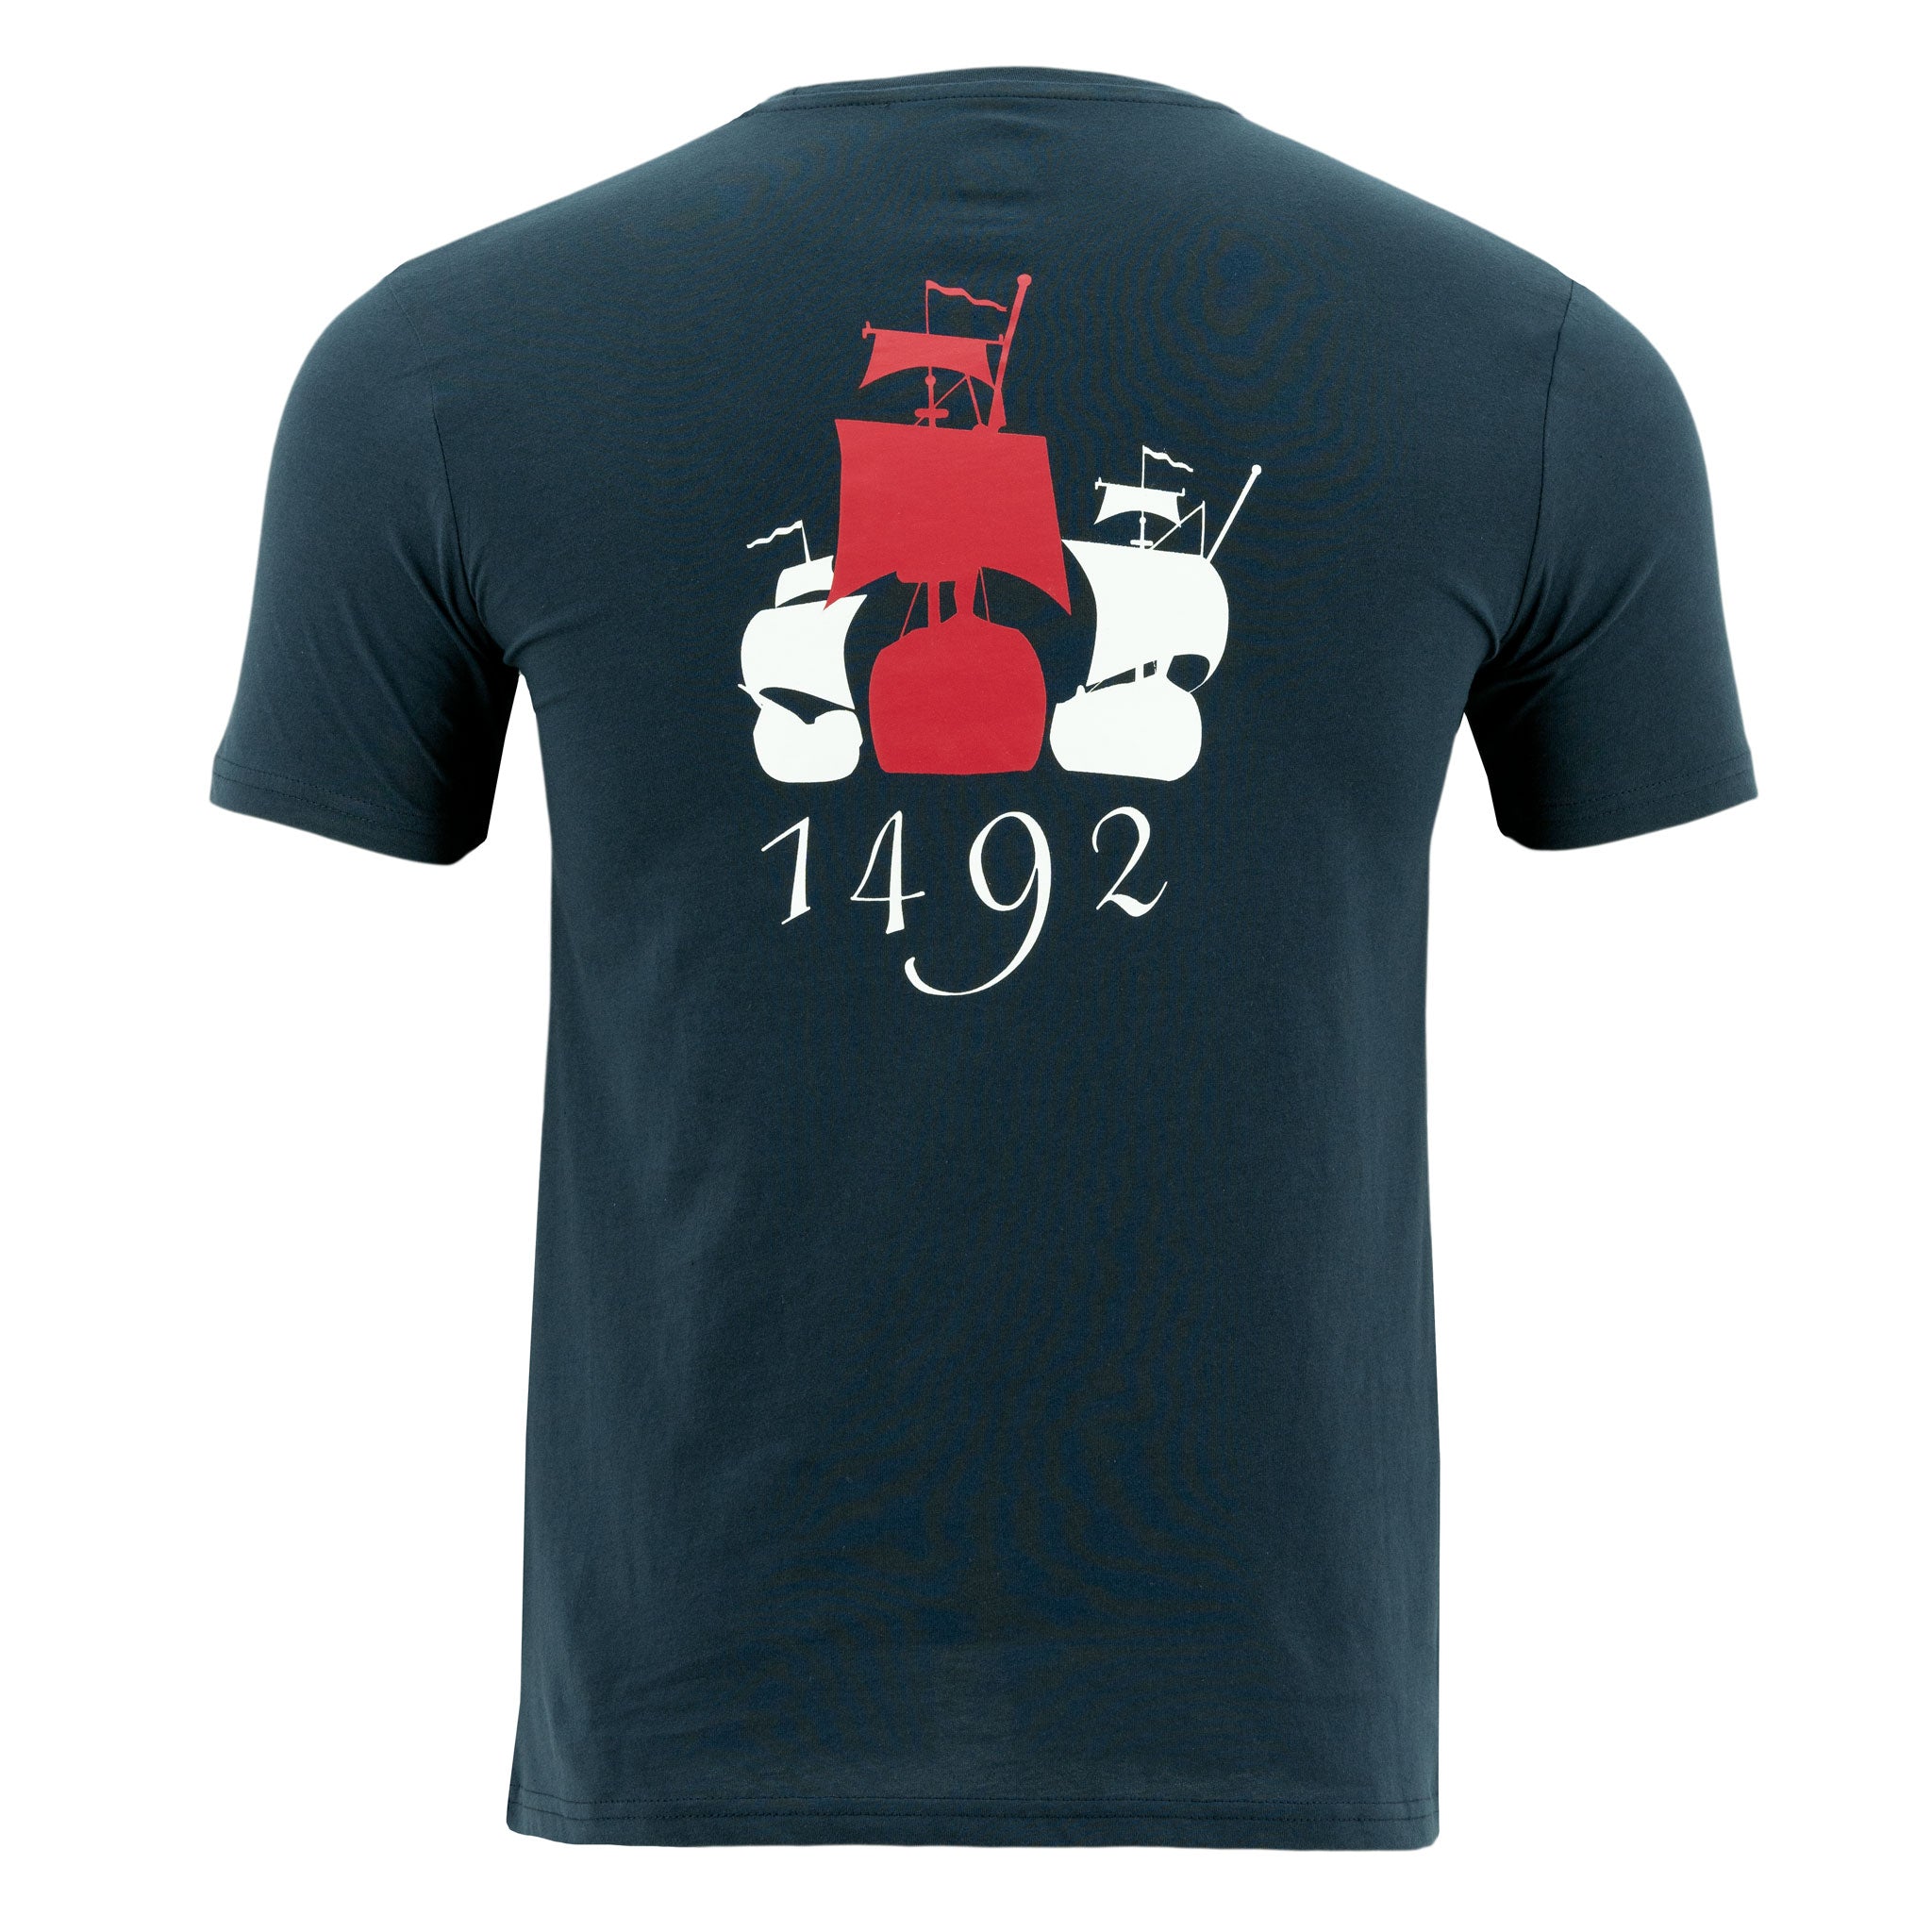 camiseta-1492-mangas-cortas-estampada-p-caballero